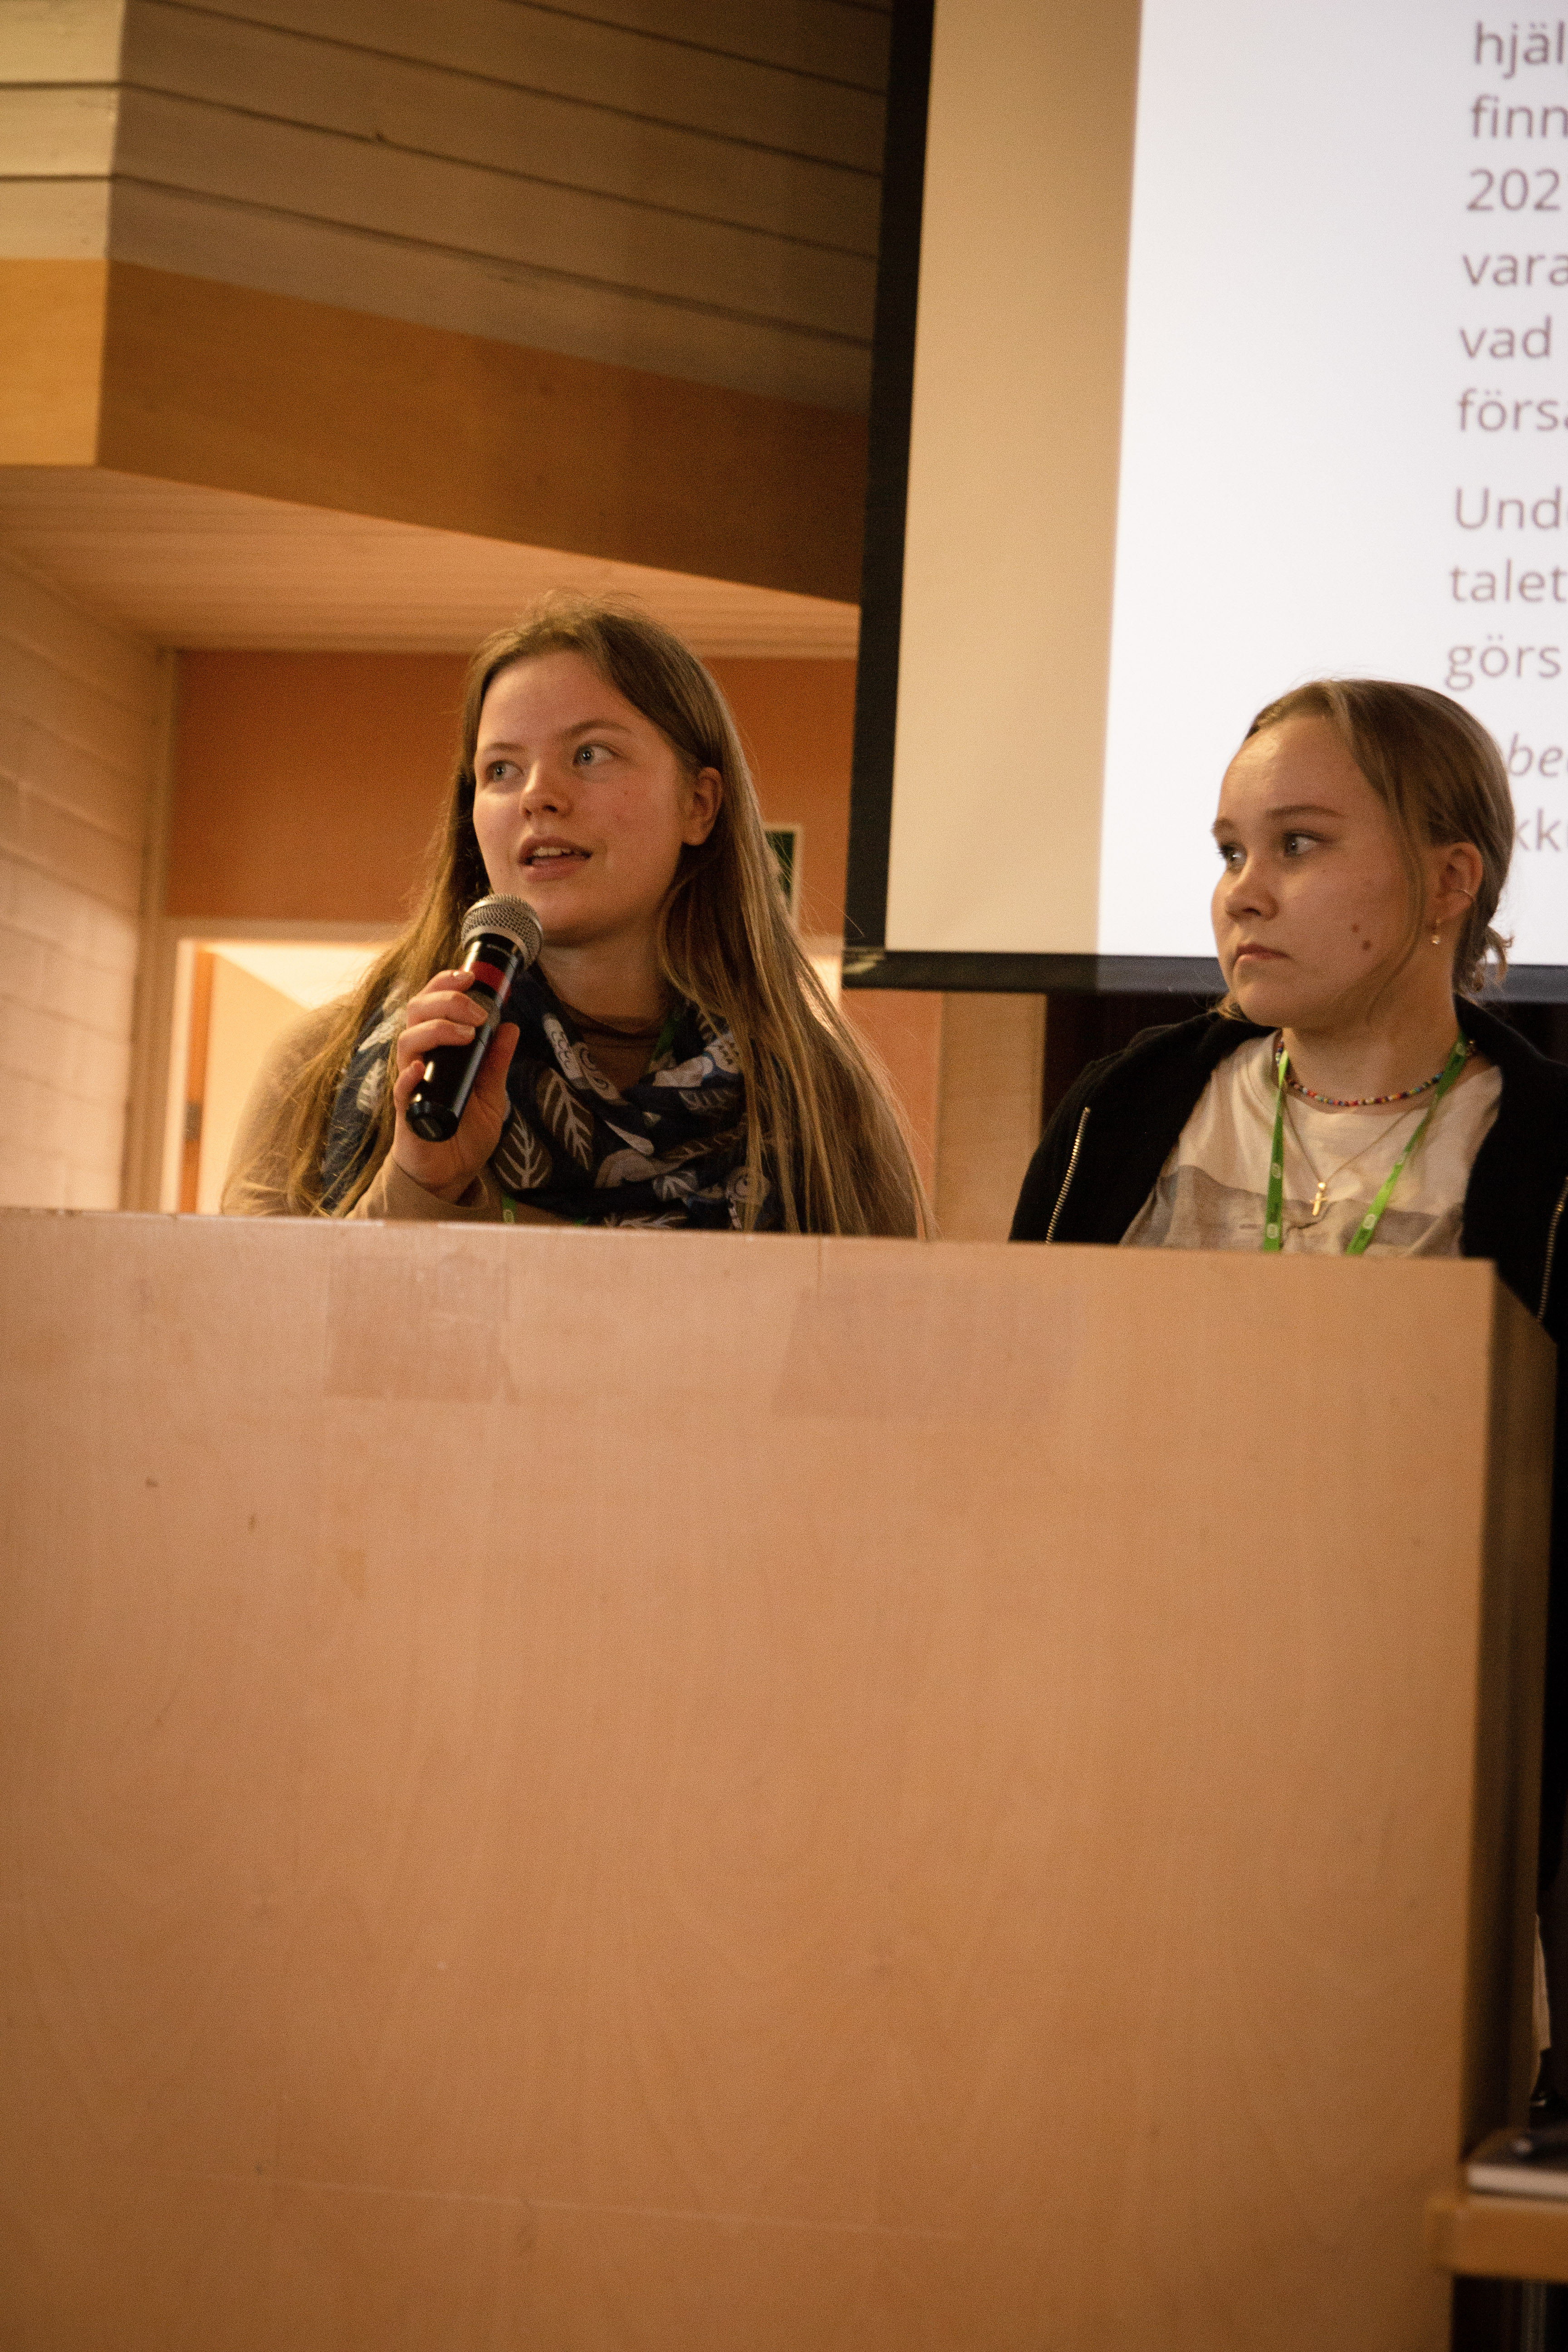 Två unga kvinnor i talarstol presenterar text på skärm.